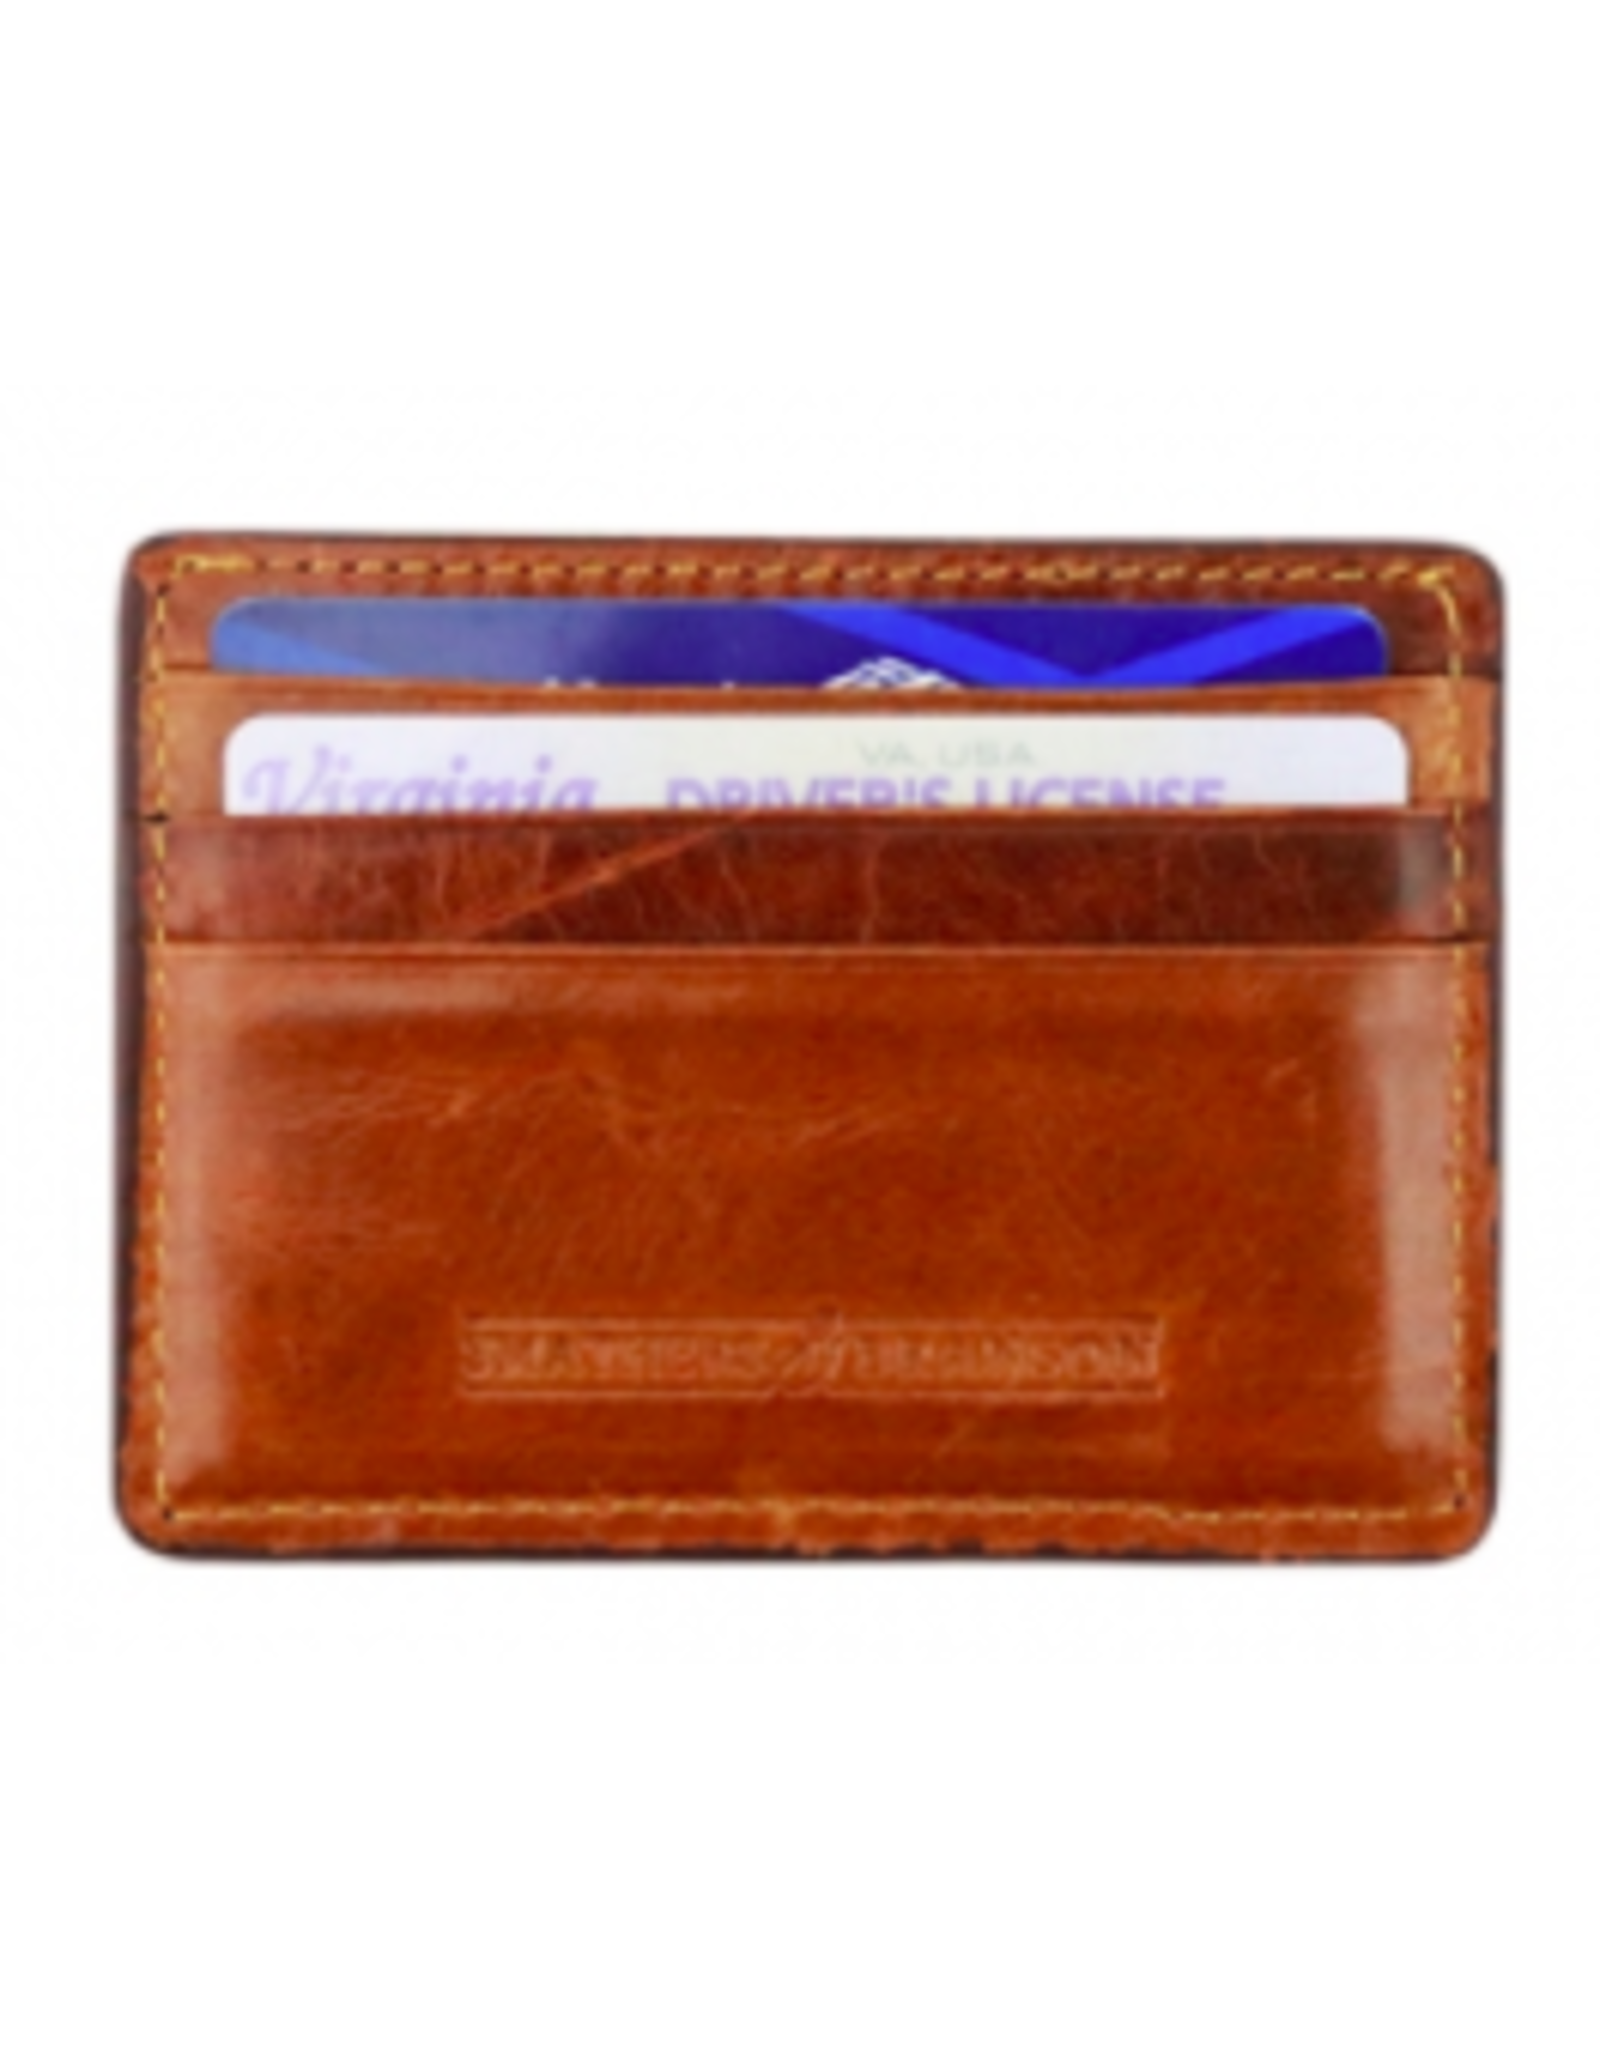 Smathers & Branson Golden Retriever Card Wallet